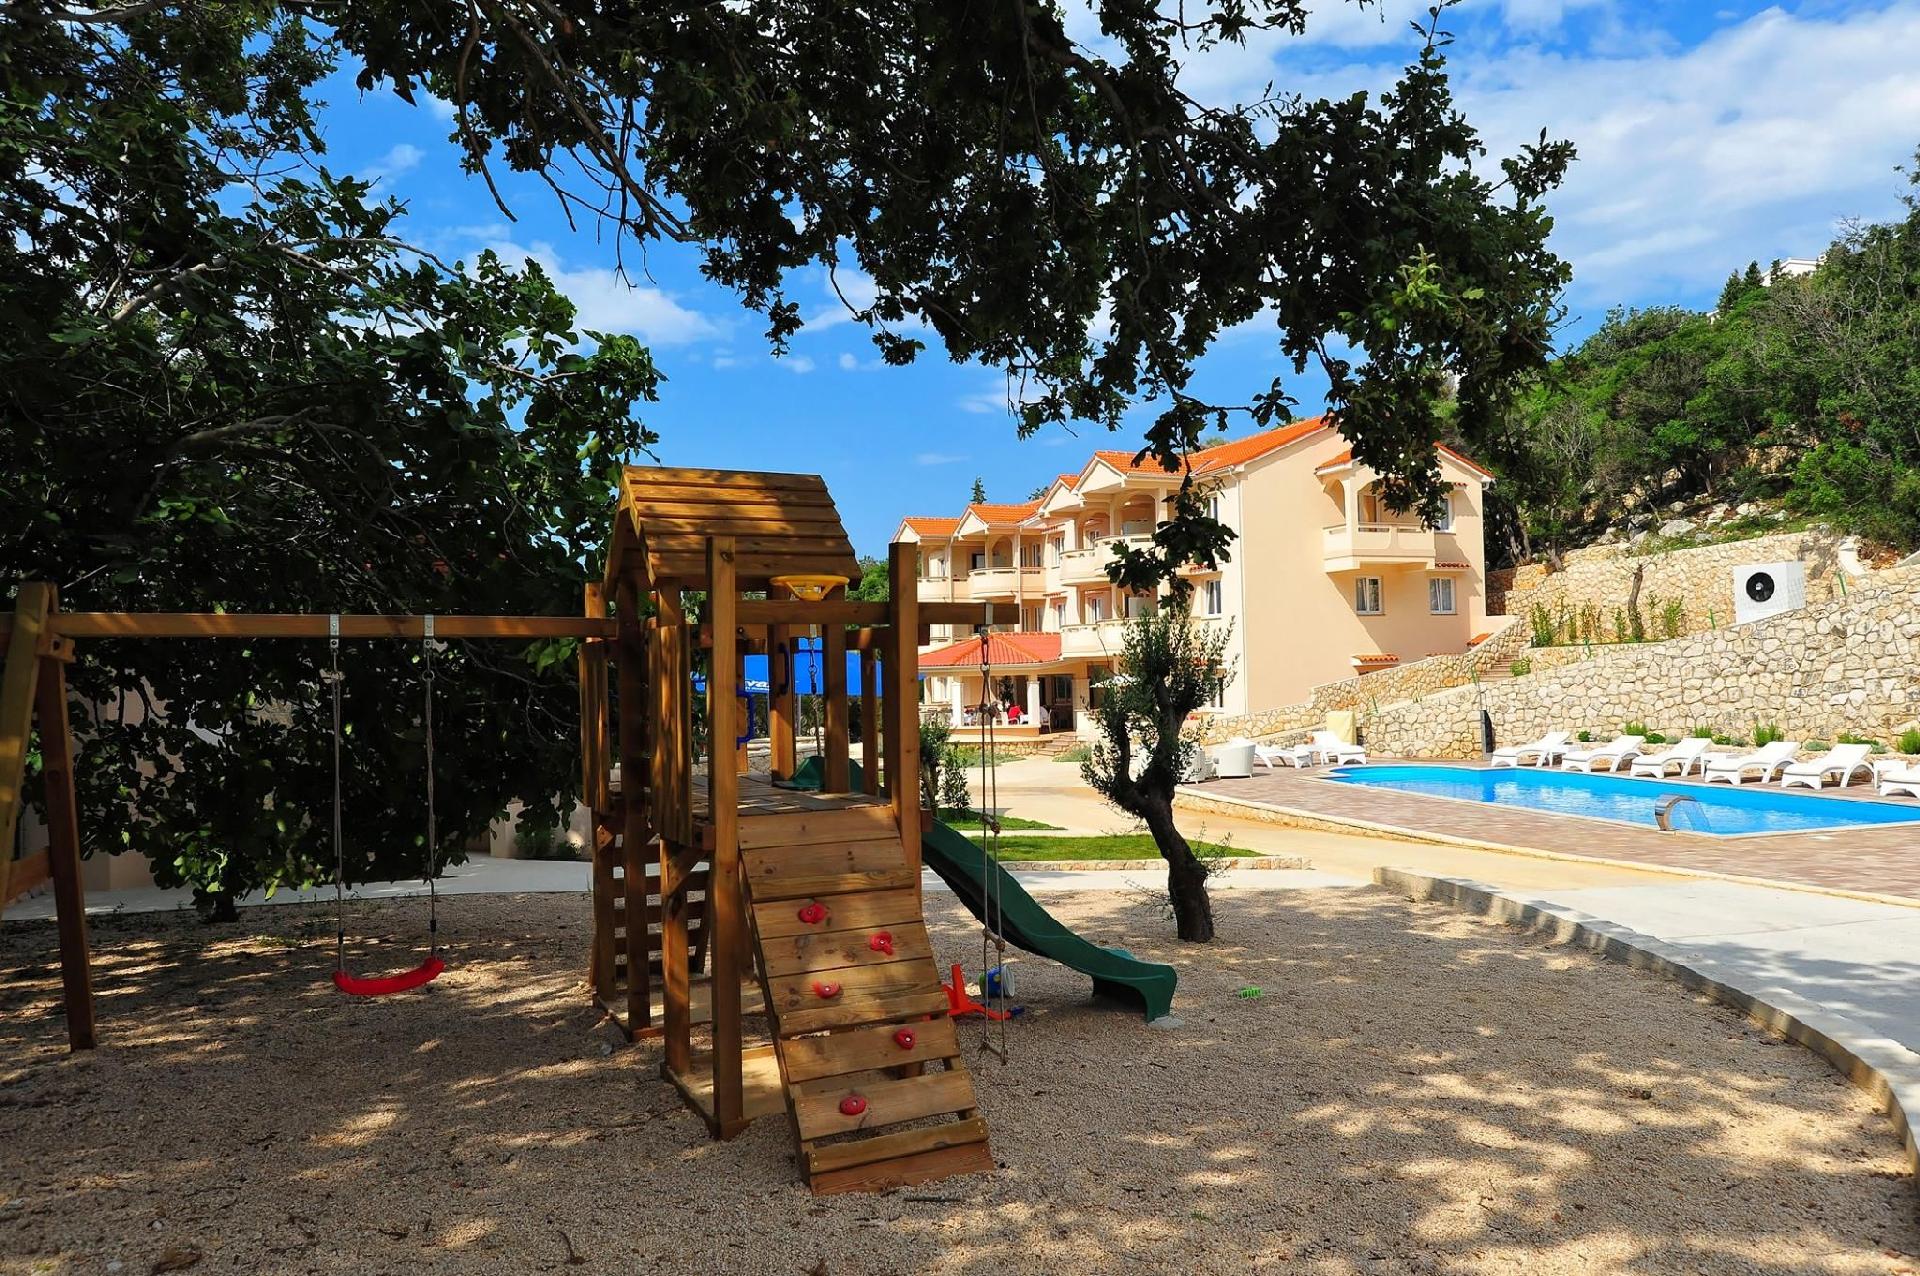 Ferienwohnung für 6 Personen ca. 65 m² i Ferienhaus in Kroatien